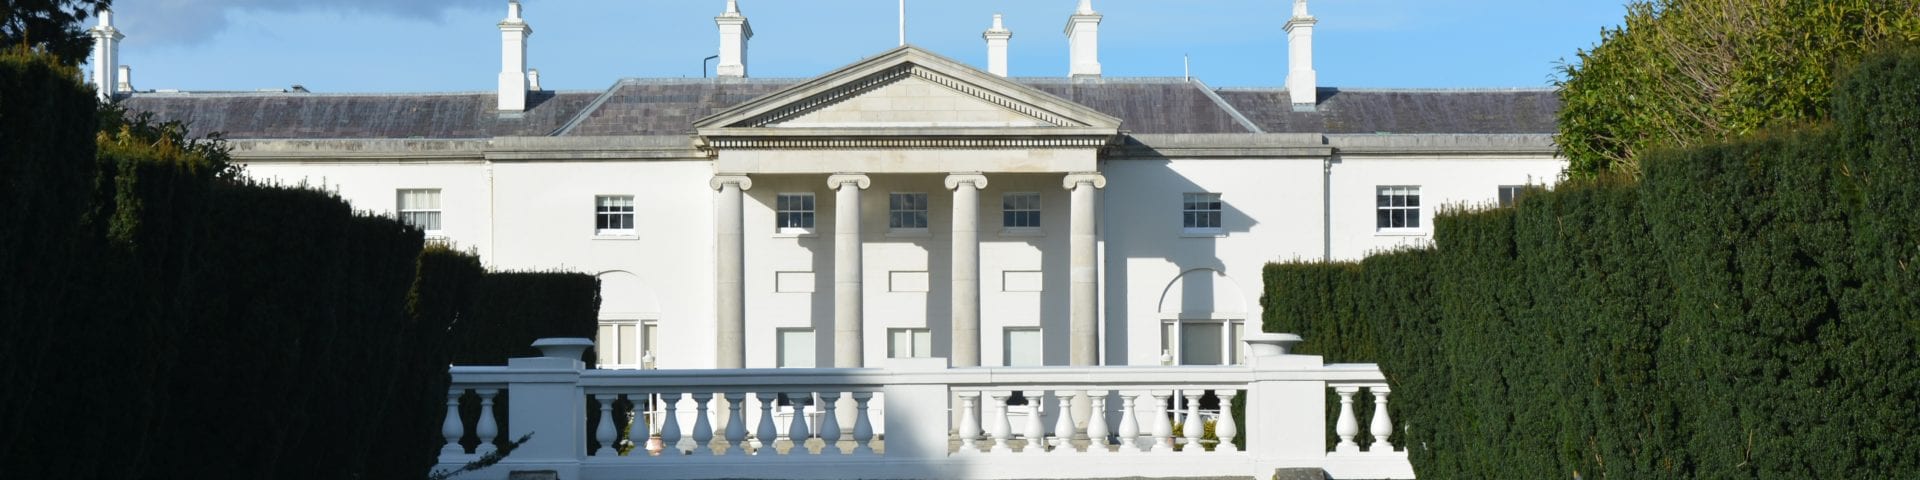 Áras an Uachtaráin, home of the President of Ireland